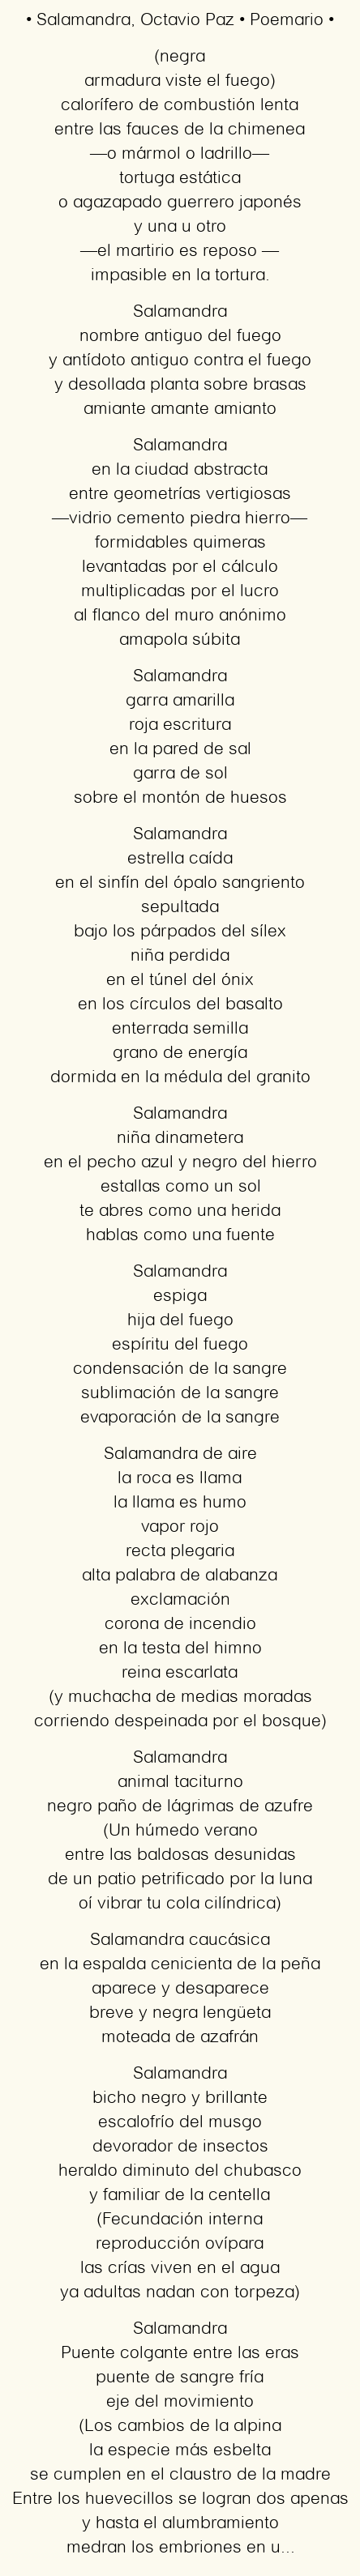 Imagen con el poema Salamandra, por Octavio Paz